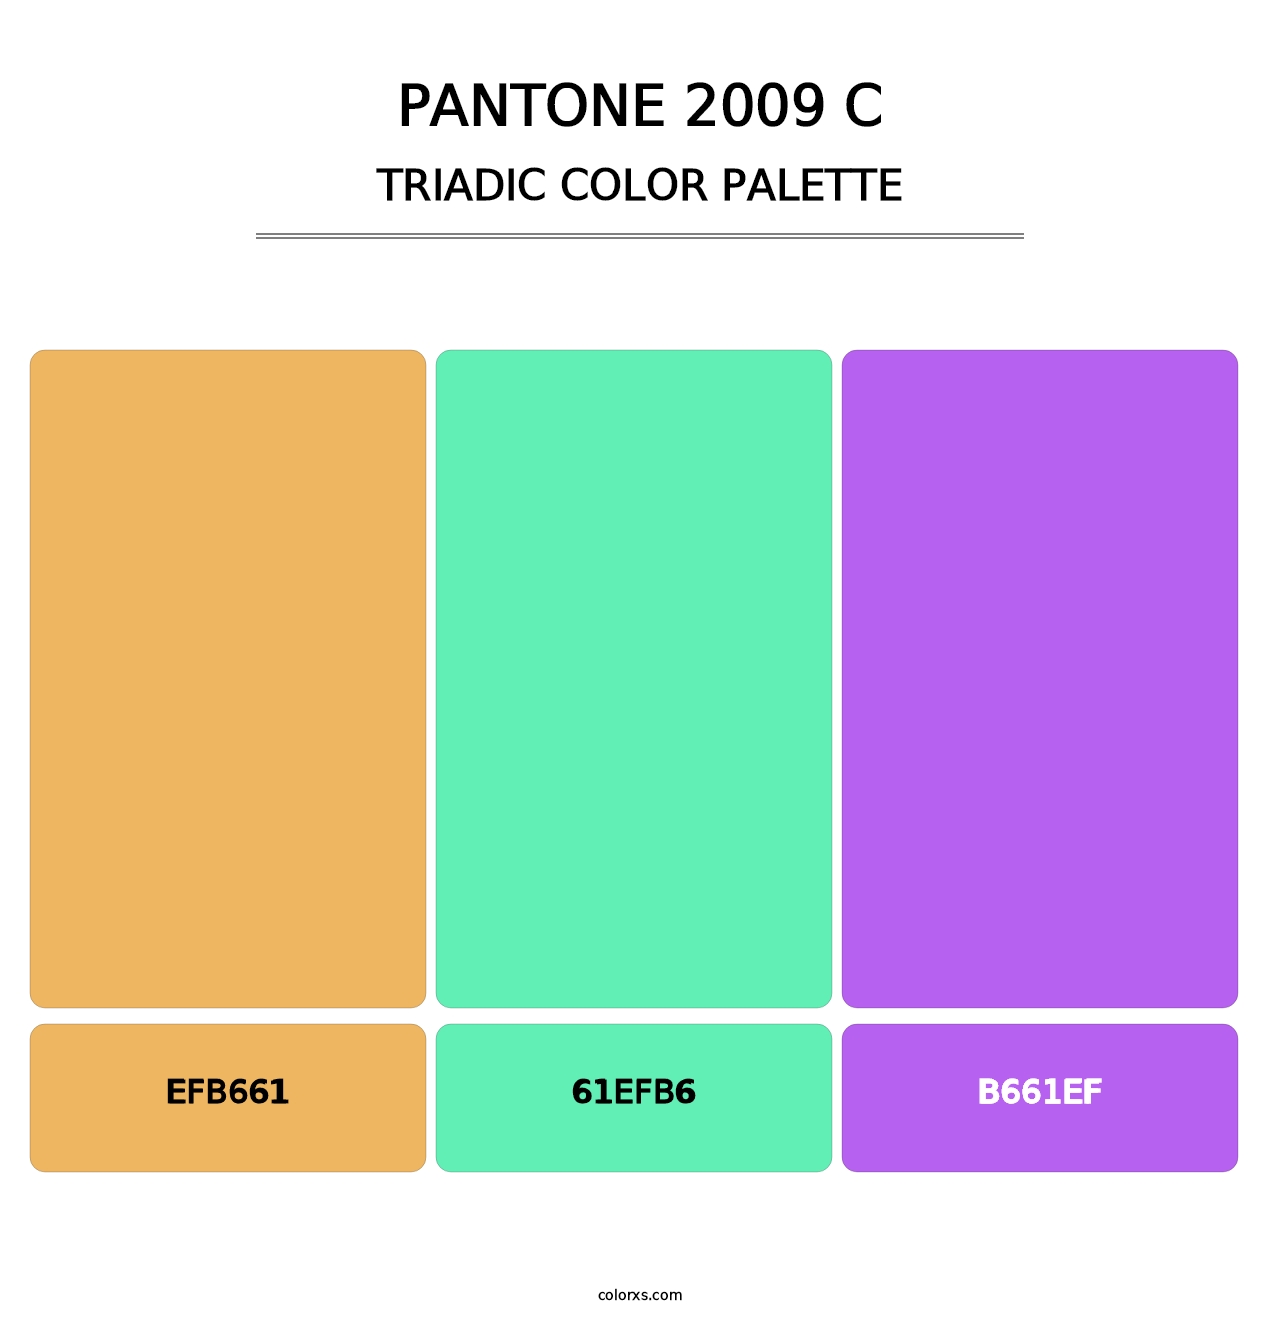 PANTONE 2009 C - Triadic Color Palette